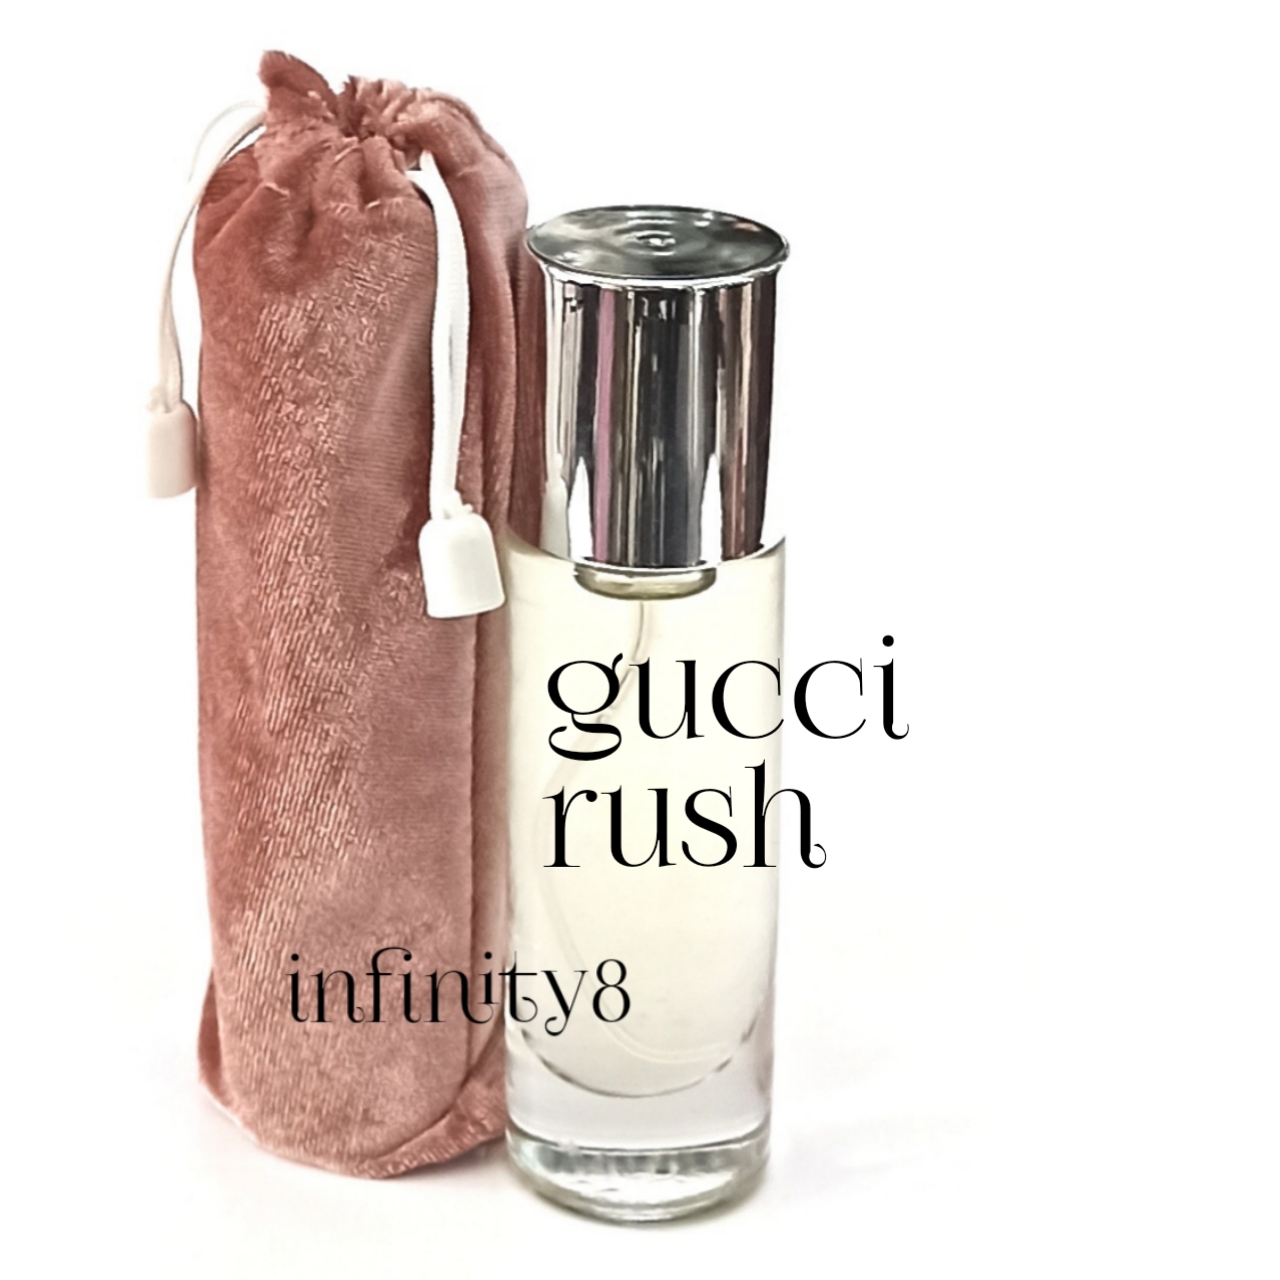 gucci rush by gucci